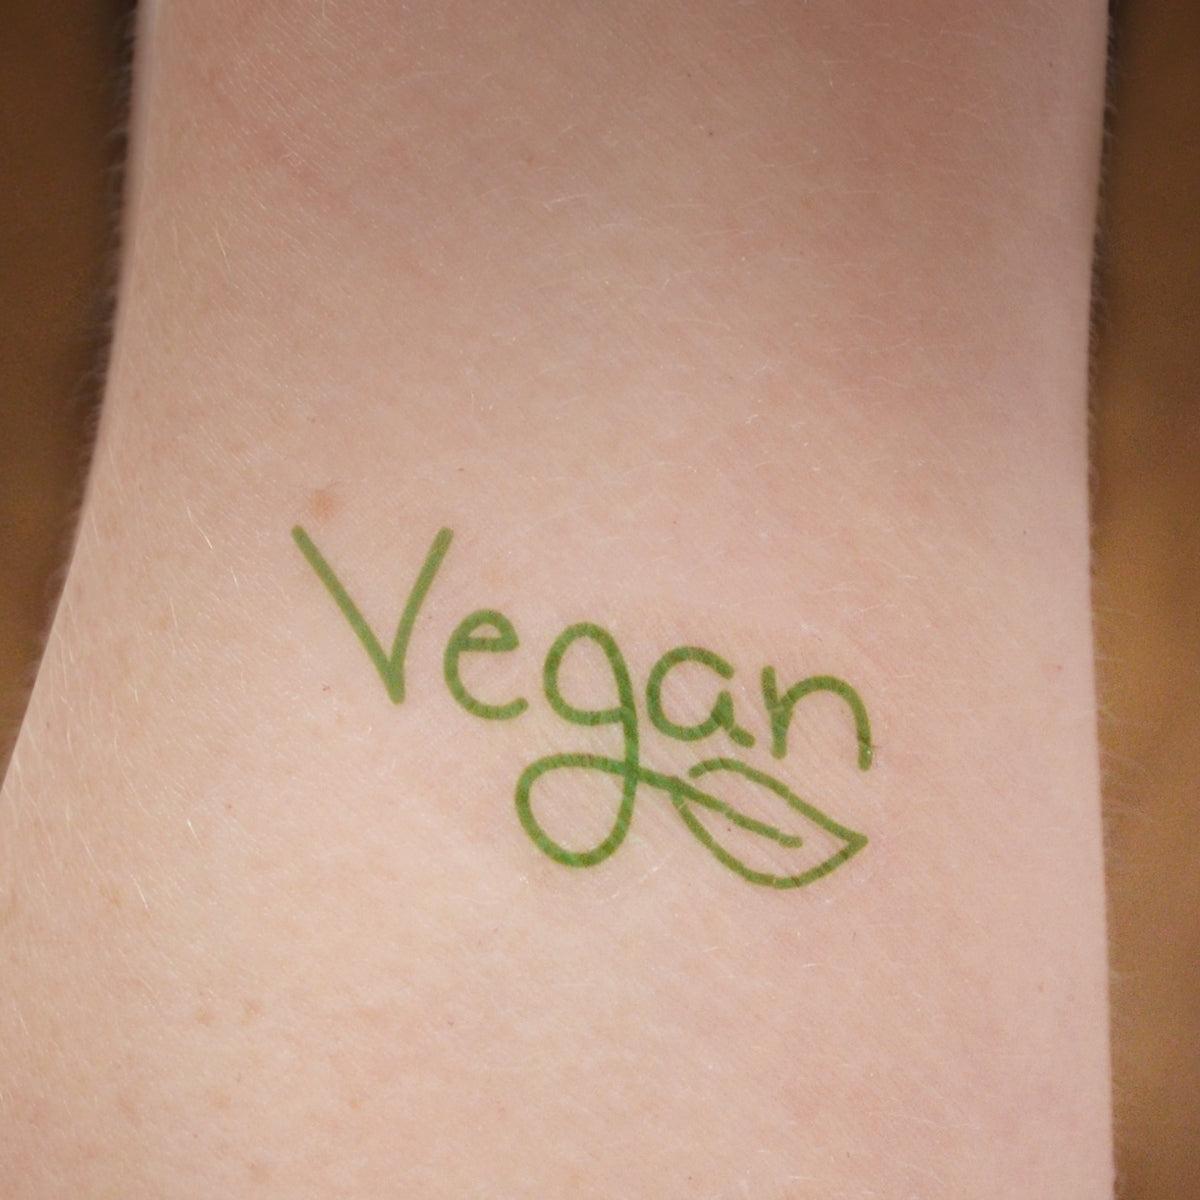 Variety sets of Vegan temporary tattoos